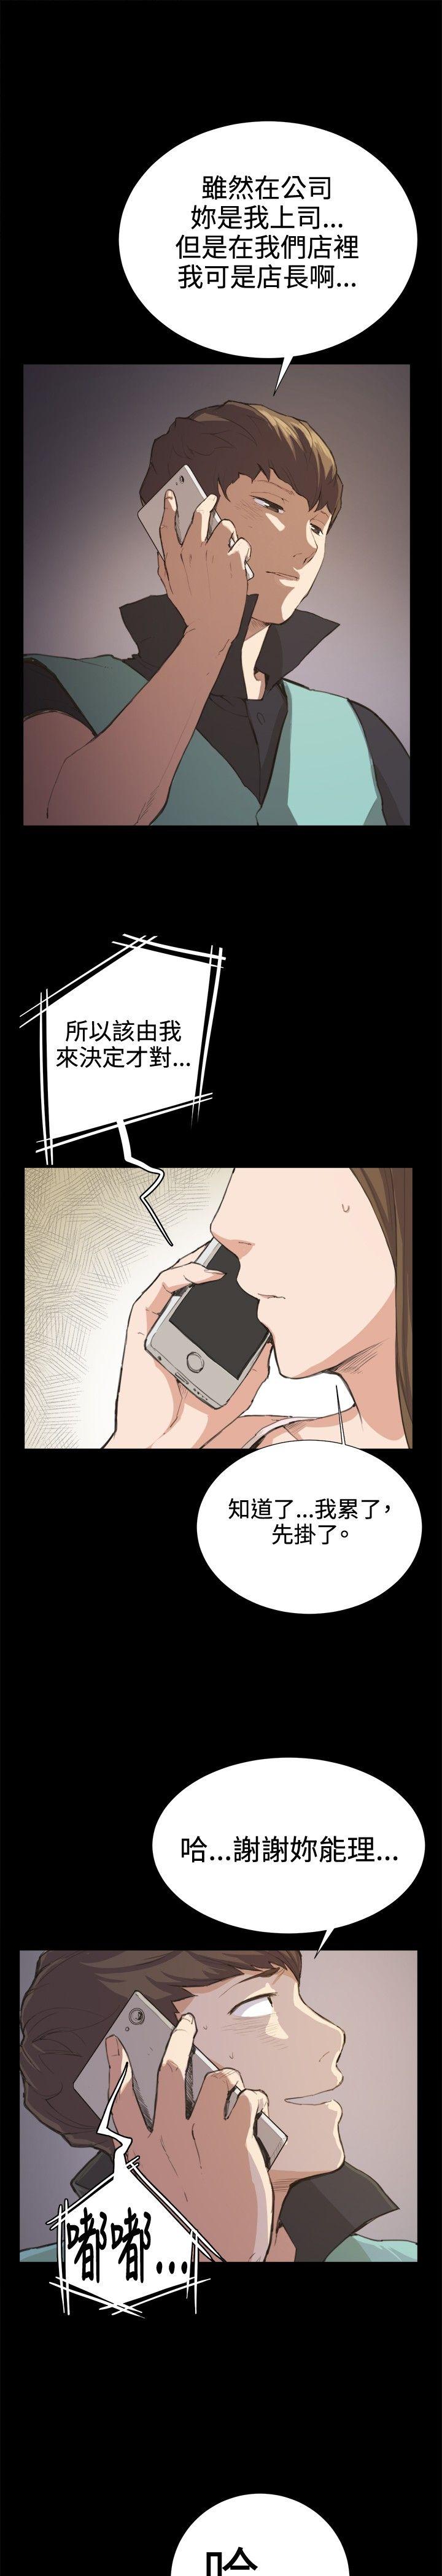 韩国污漫画 深夜便利店 第7话 17